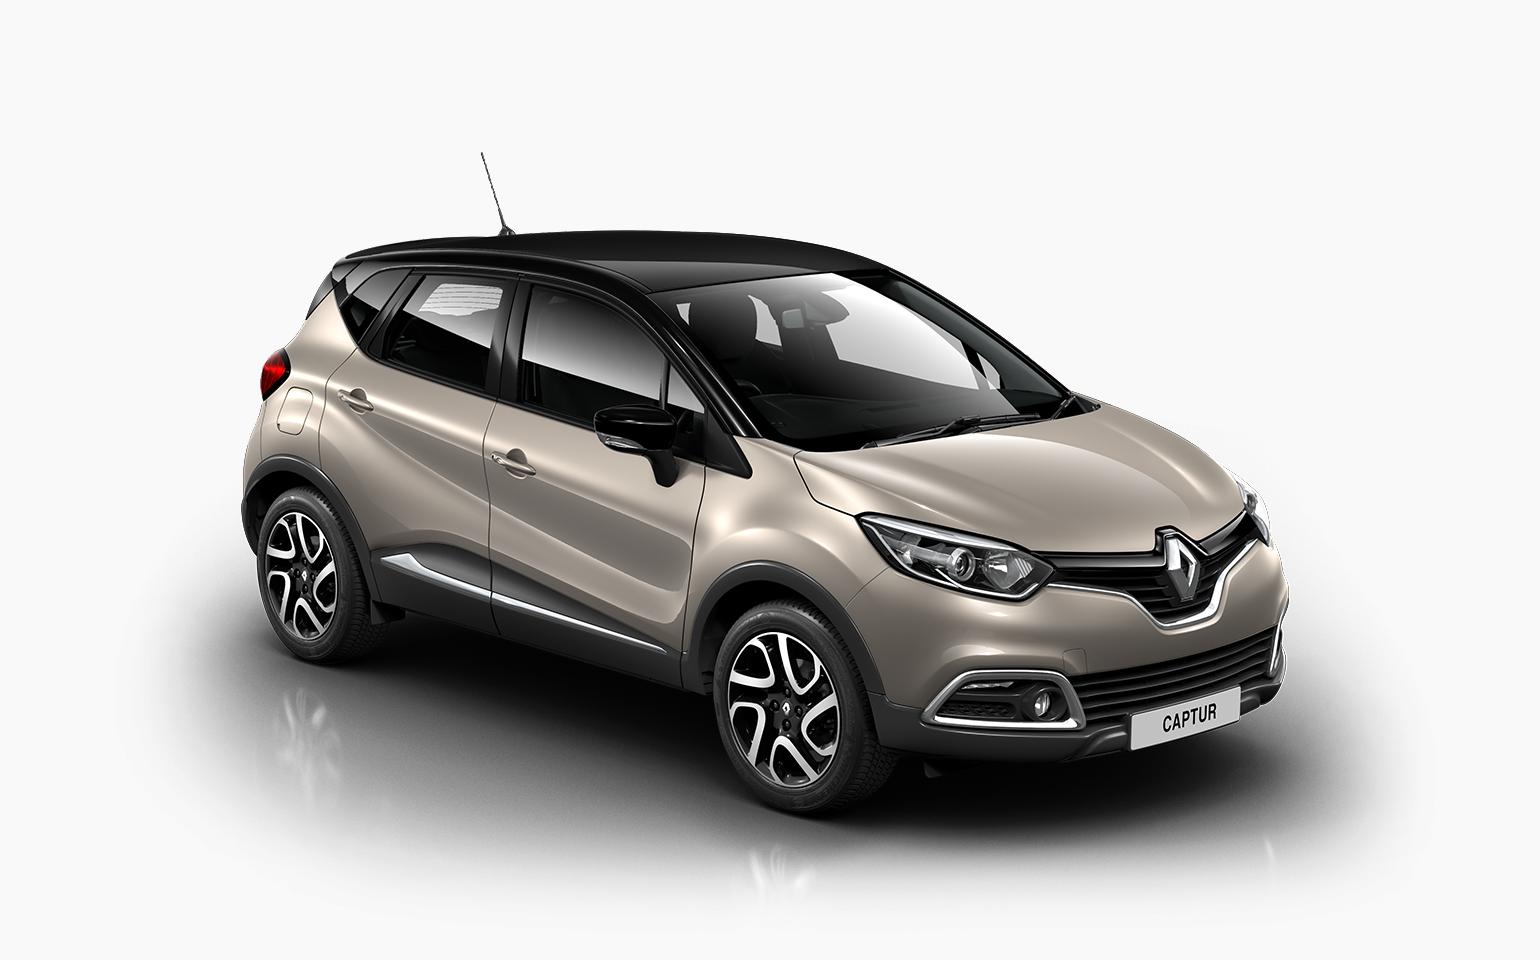 Renault Captur Backgrounds, Compatible - PC, Mobile, Gadgets| 1540x960 px